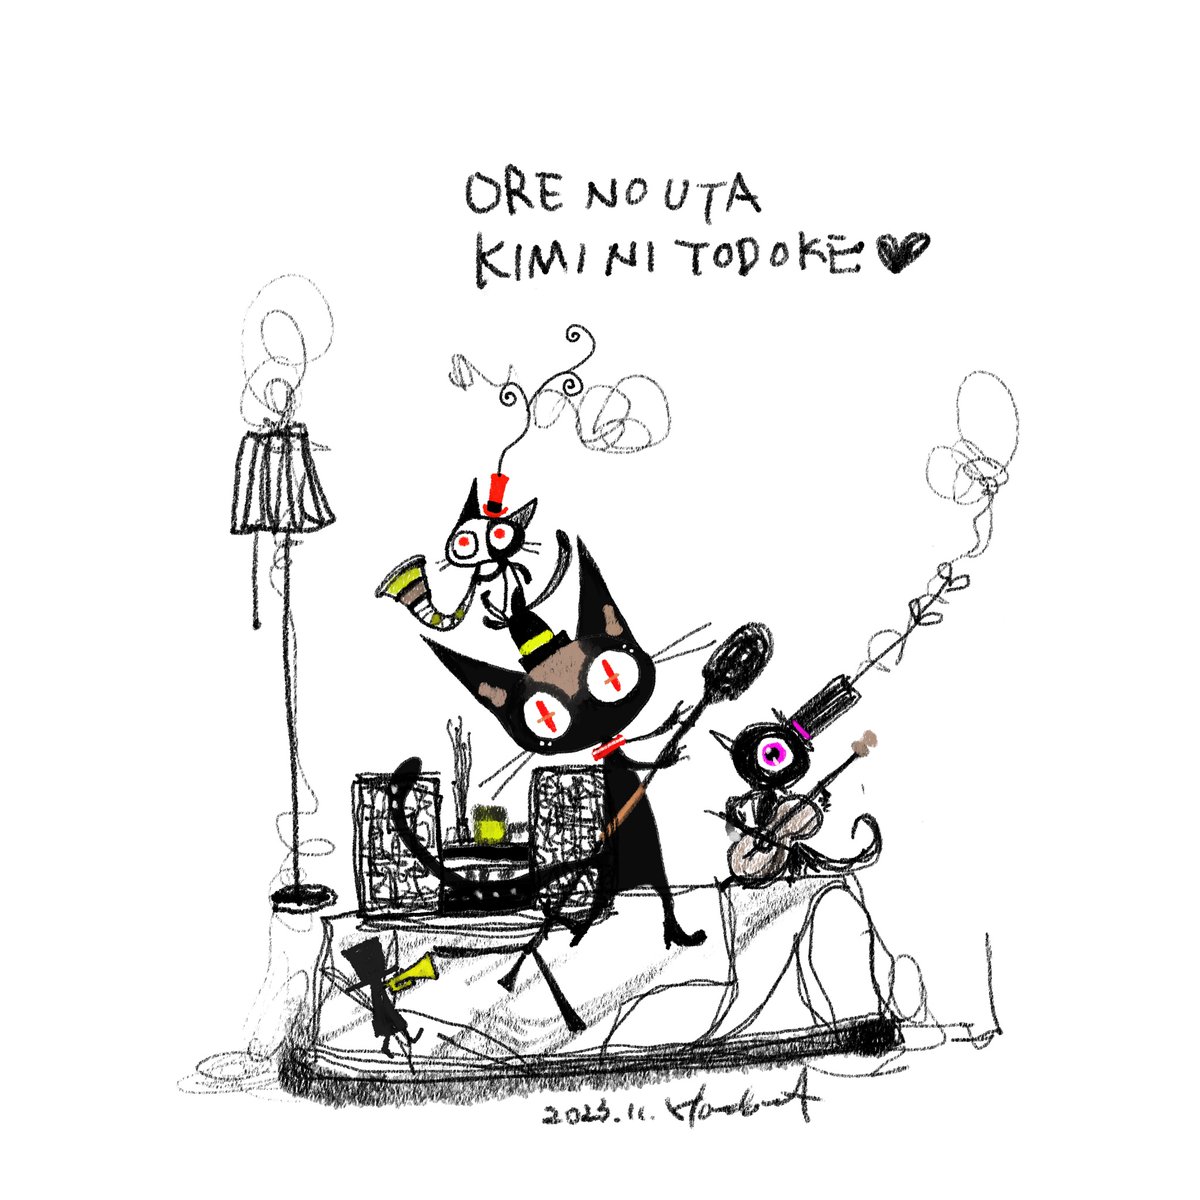 「オレノウタキミニトドケ 」|ほんだ猫 (不思議風景と猫を描くぶるべり)のイラスト